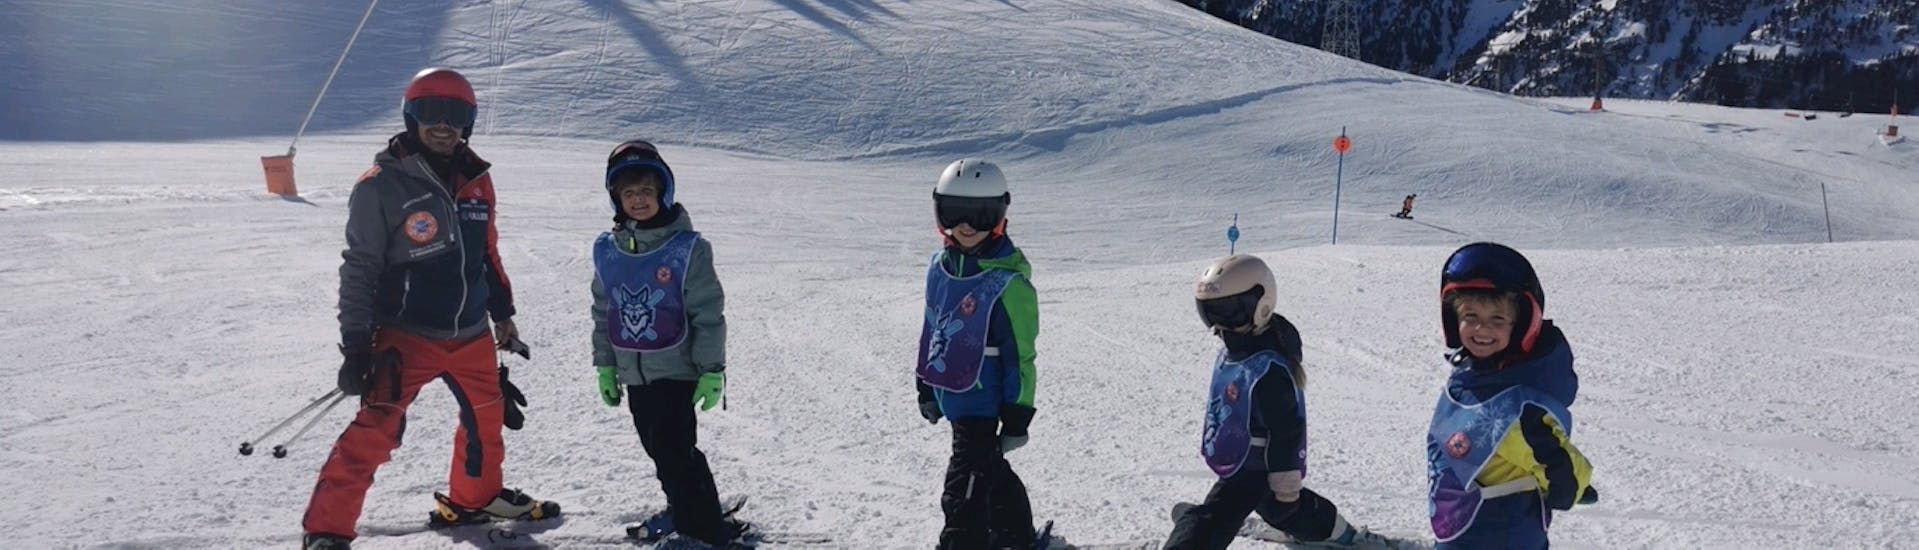 Kinder-Skikurs ab 6 Jahren für alle Levels.